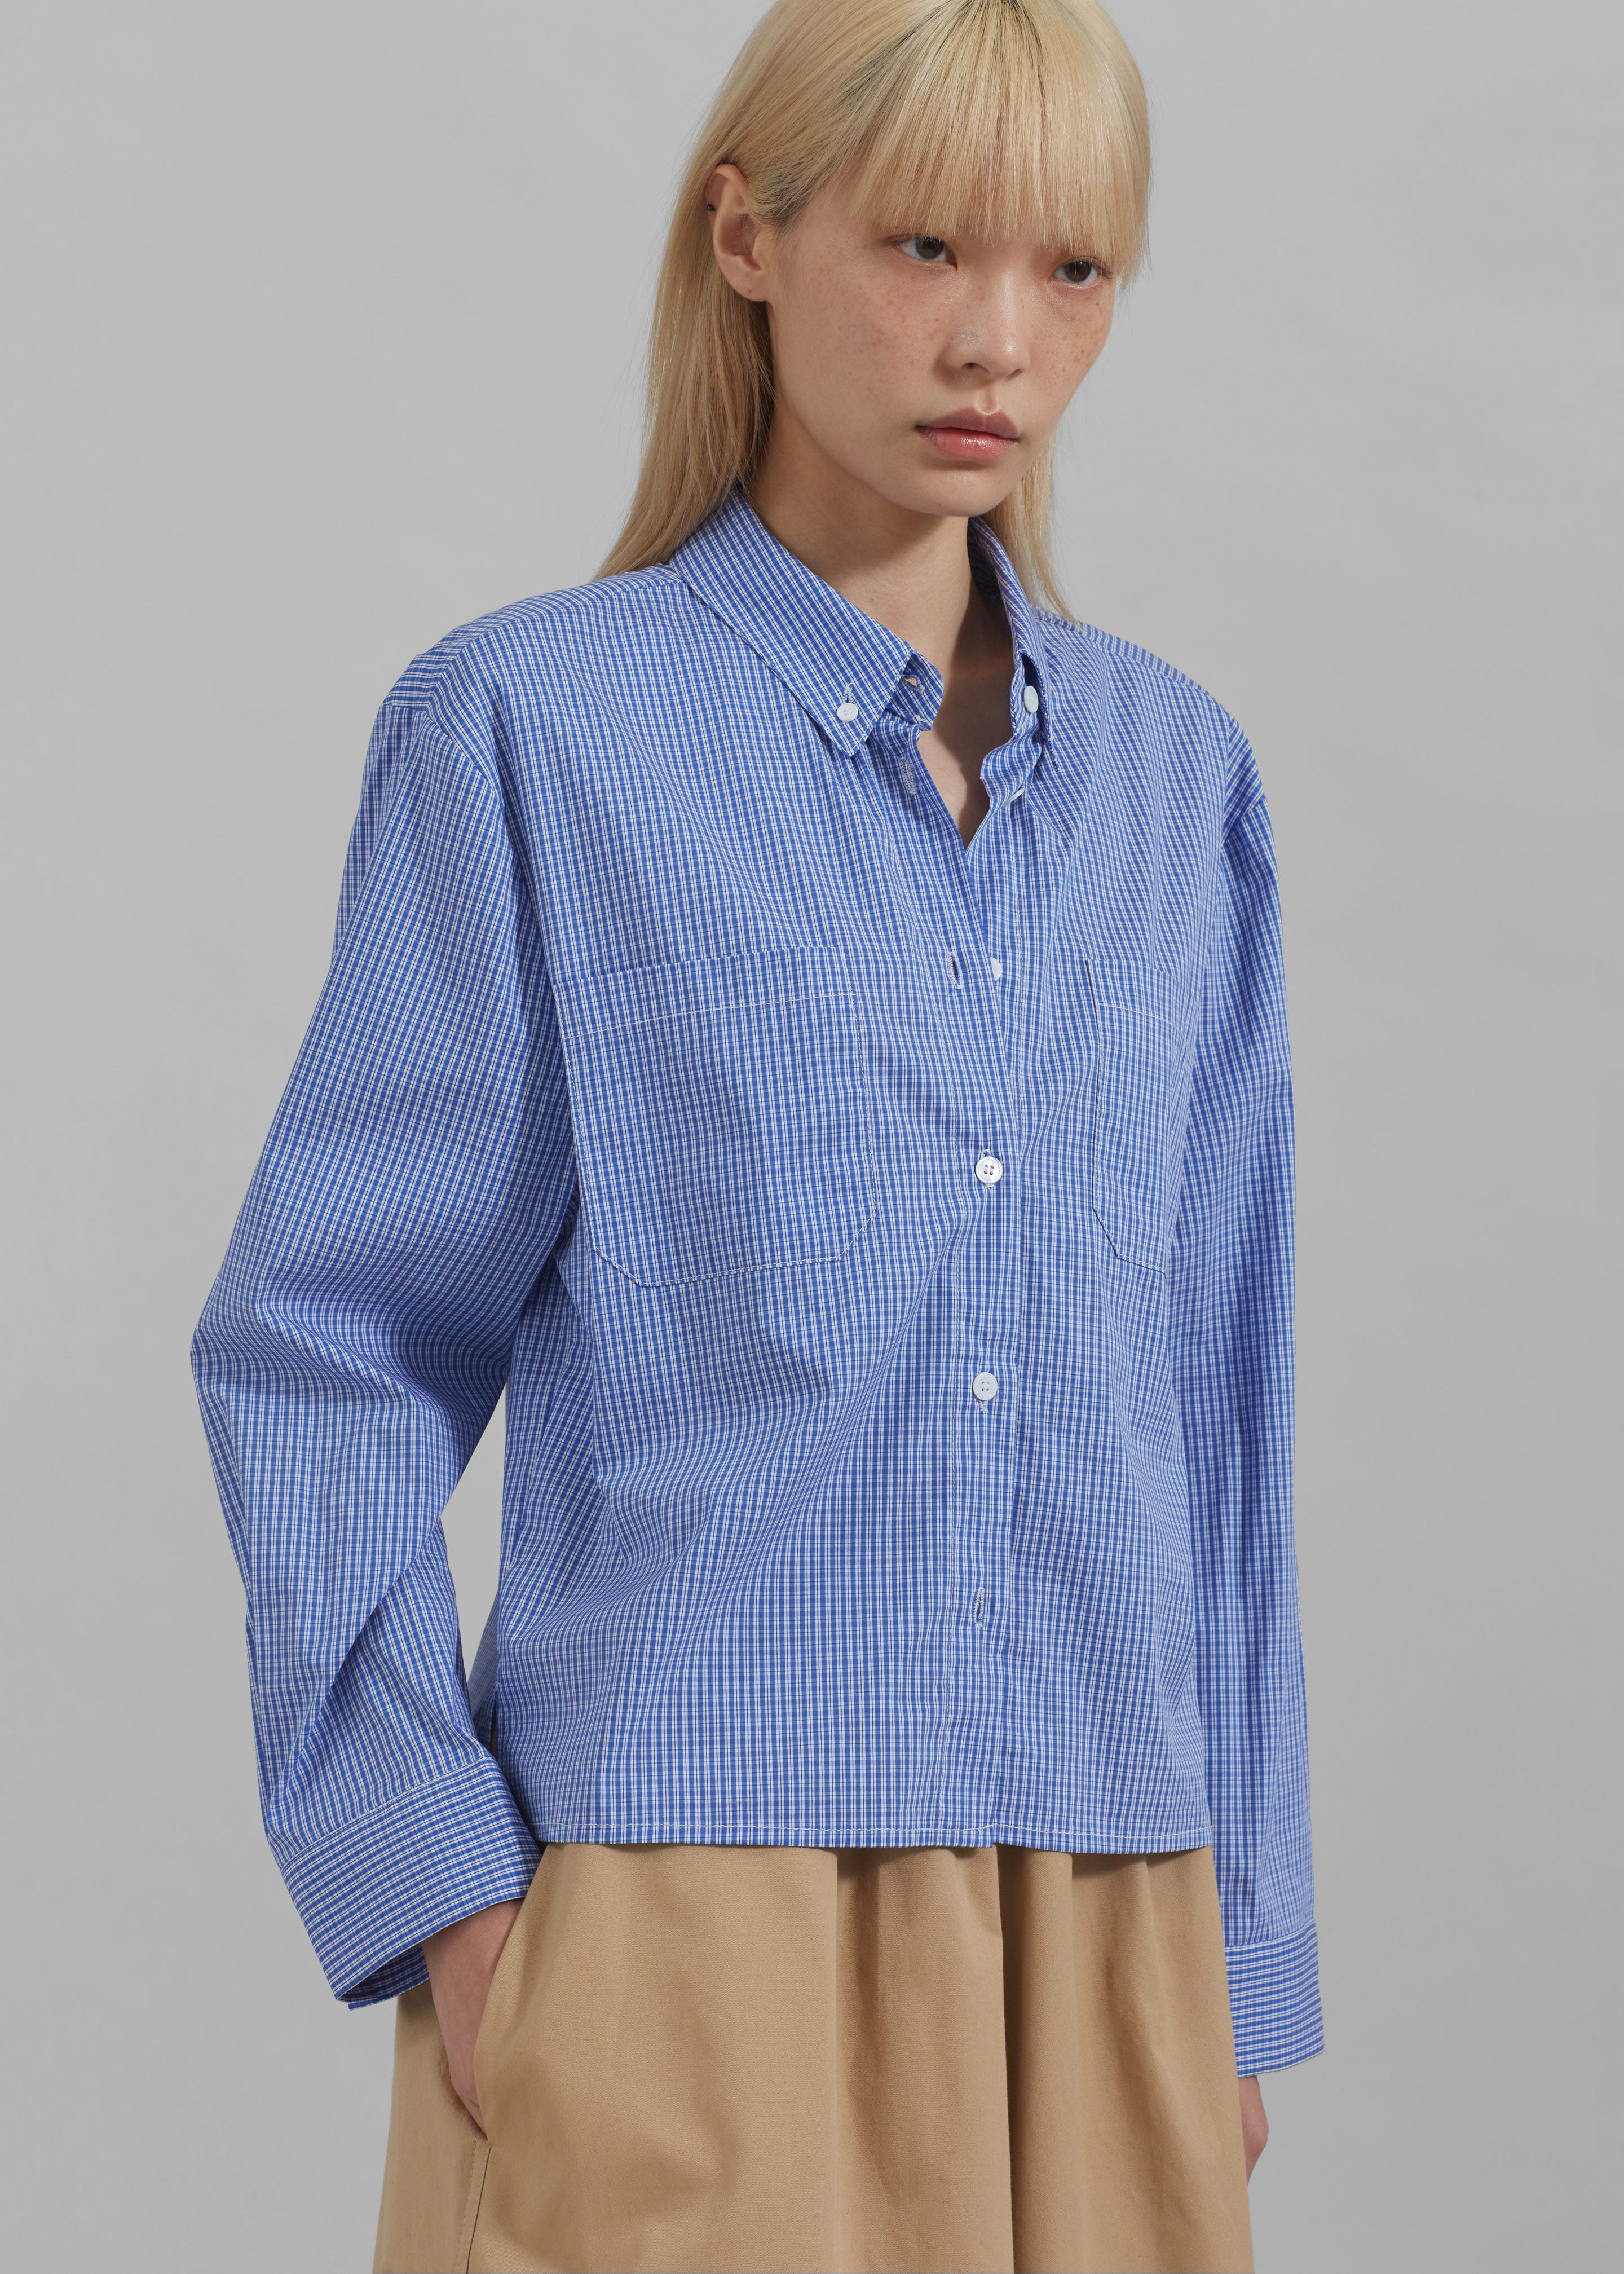 Kessa Gingham Button Up Shirt - Blue - 5